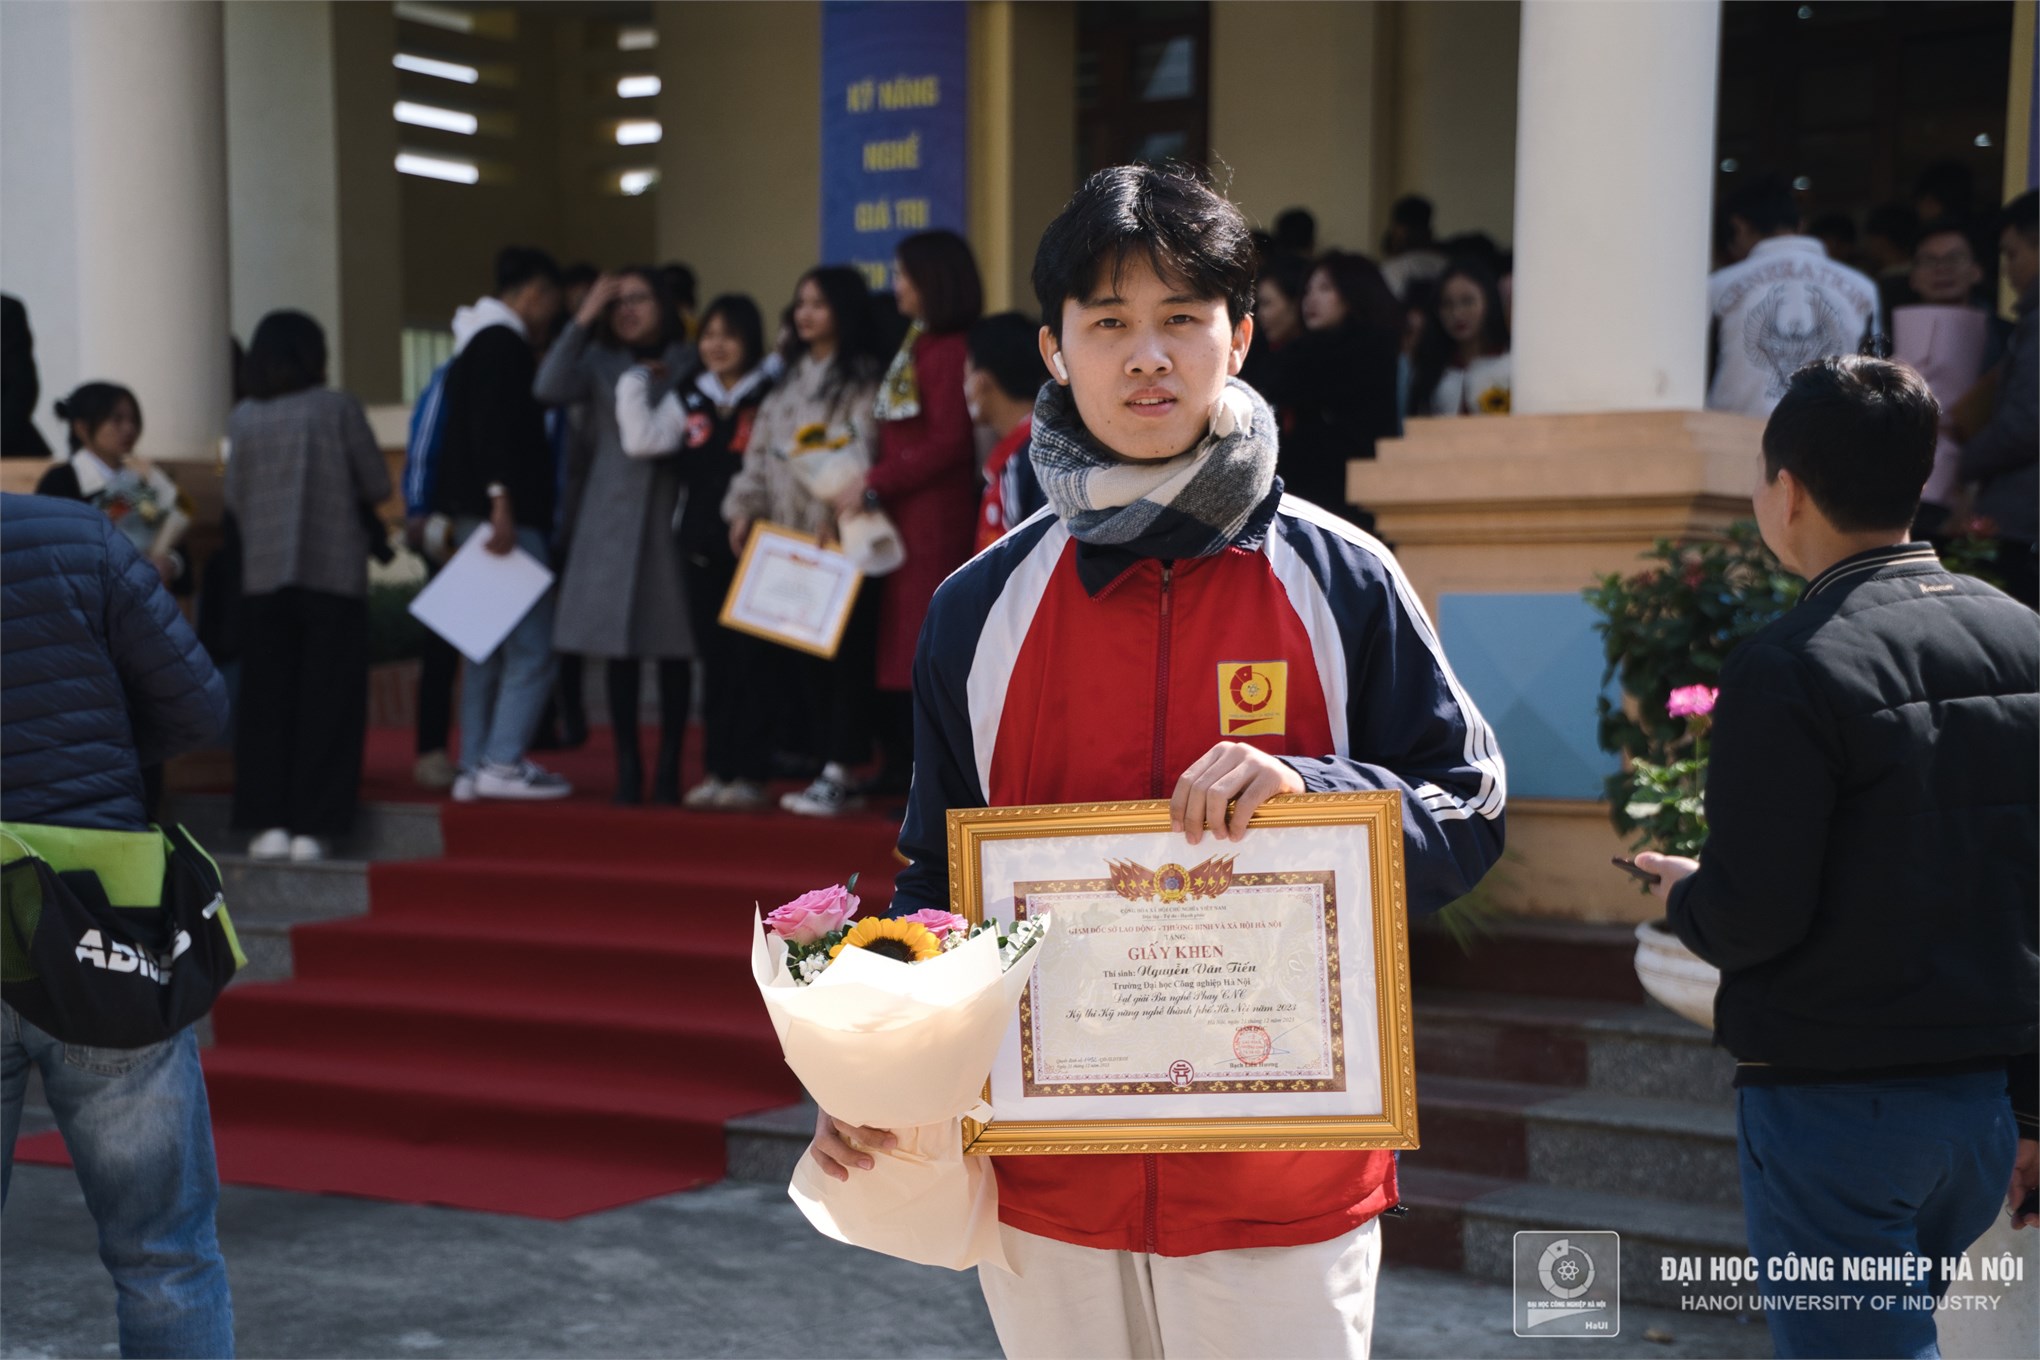 HaUI khẳng định tài năng tại Kỳ thi kỹ năng nghề thành phố Hà Nội năm 2023